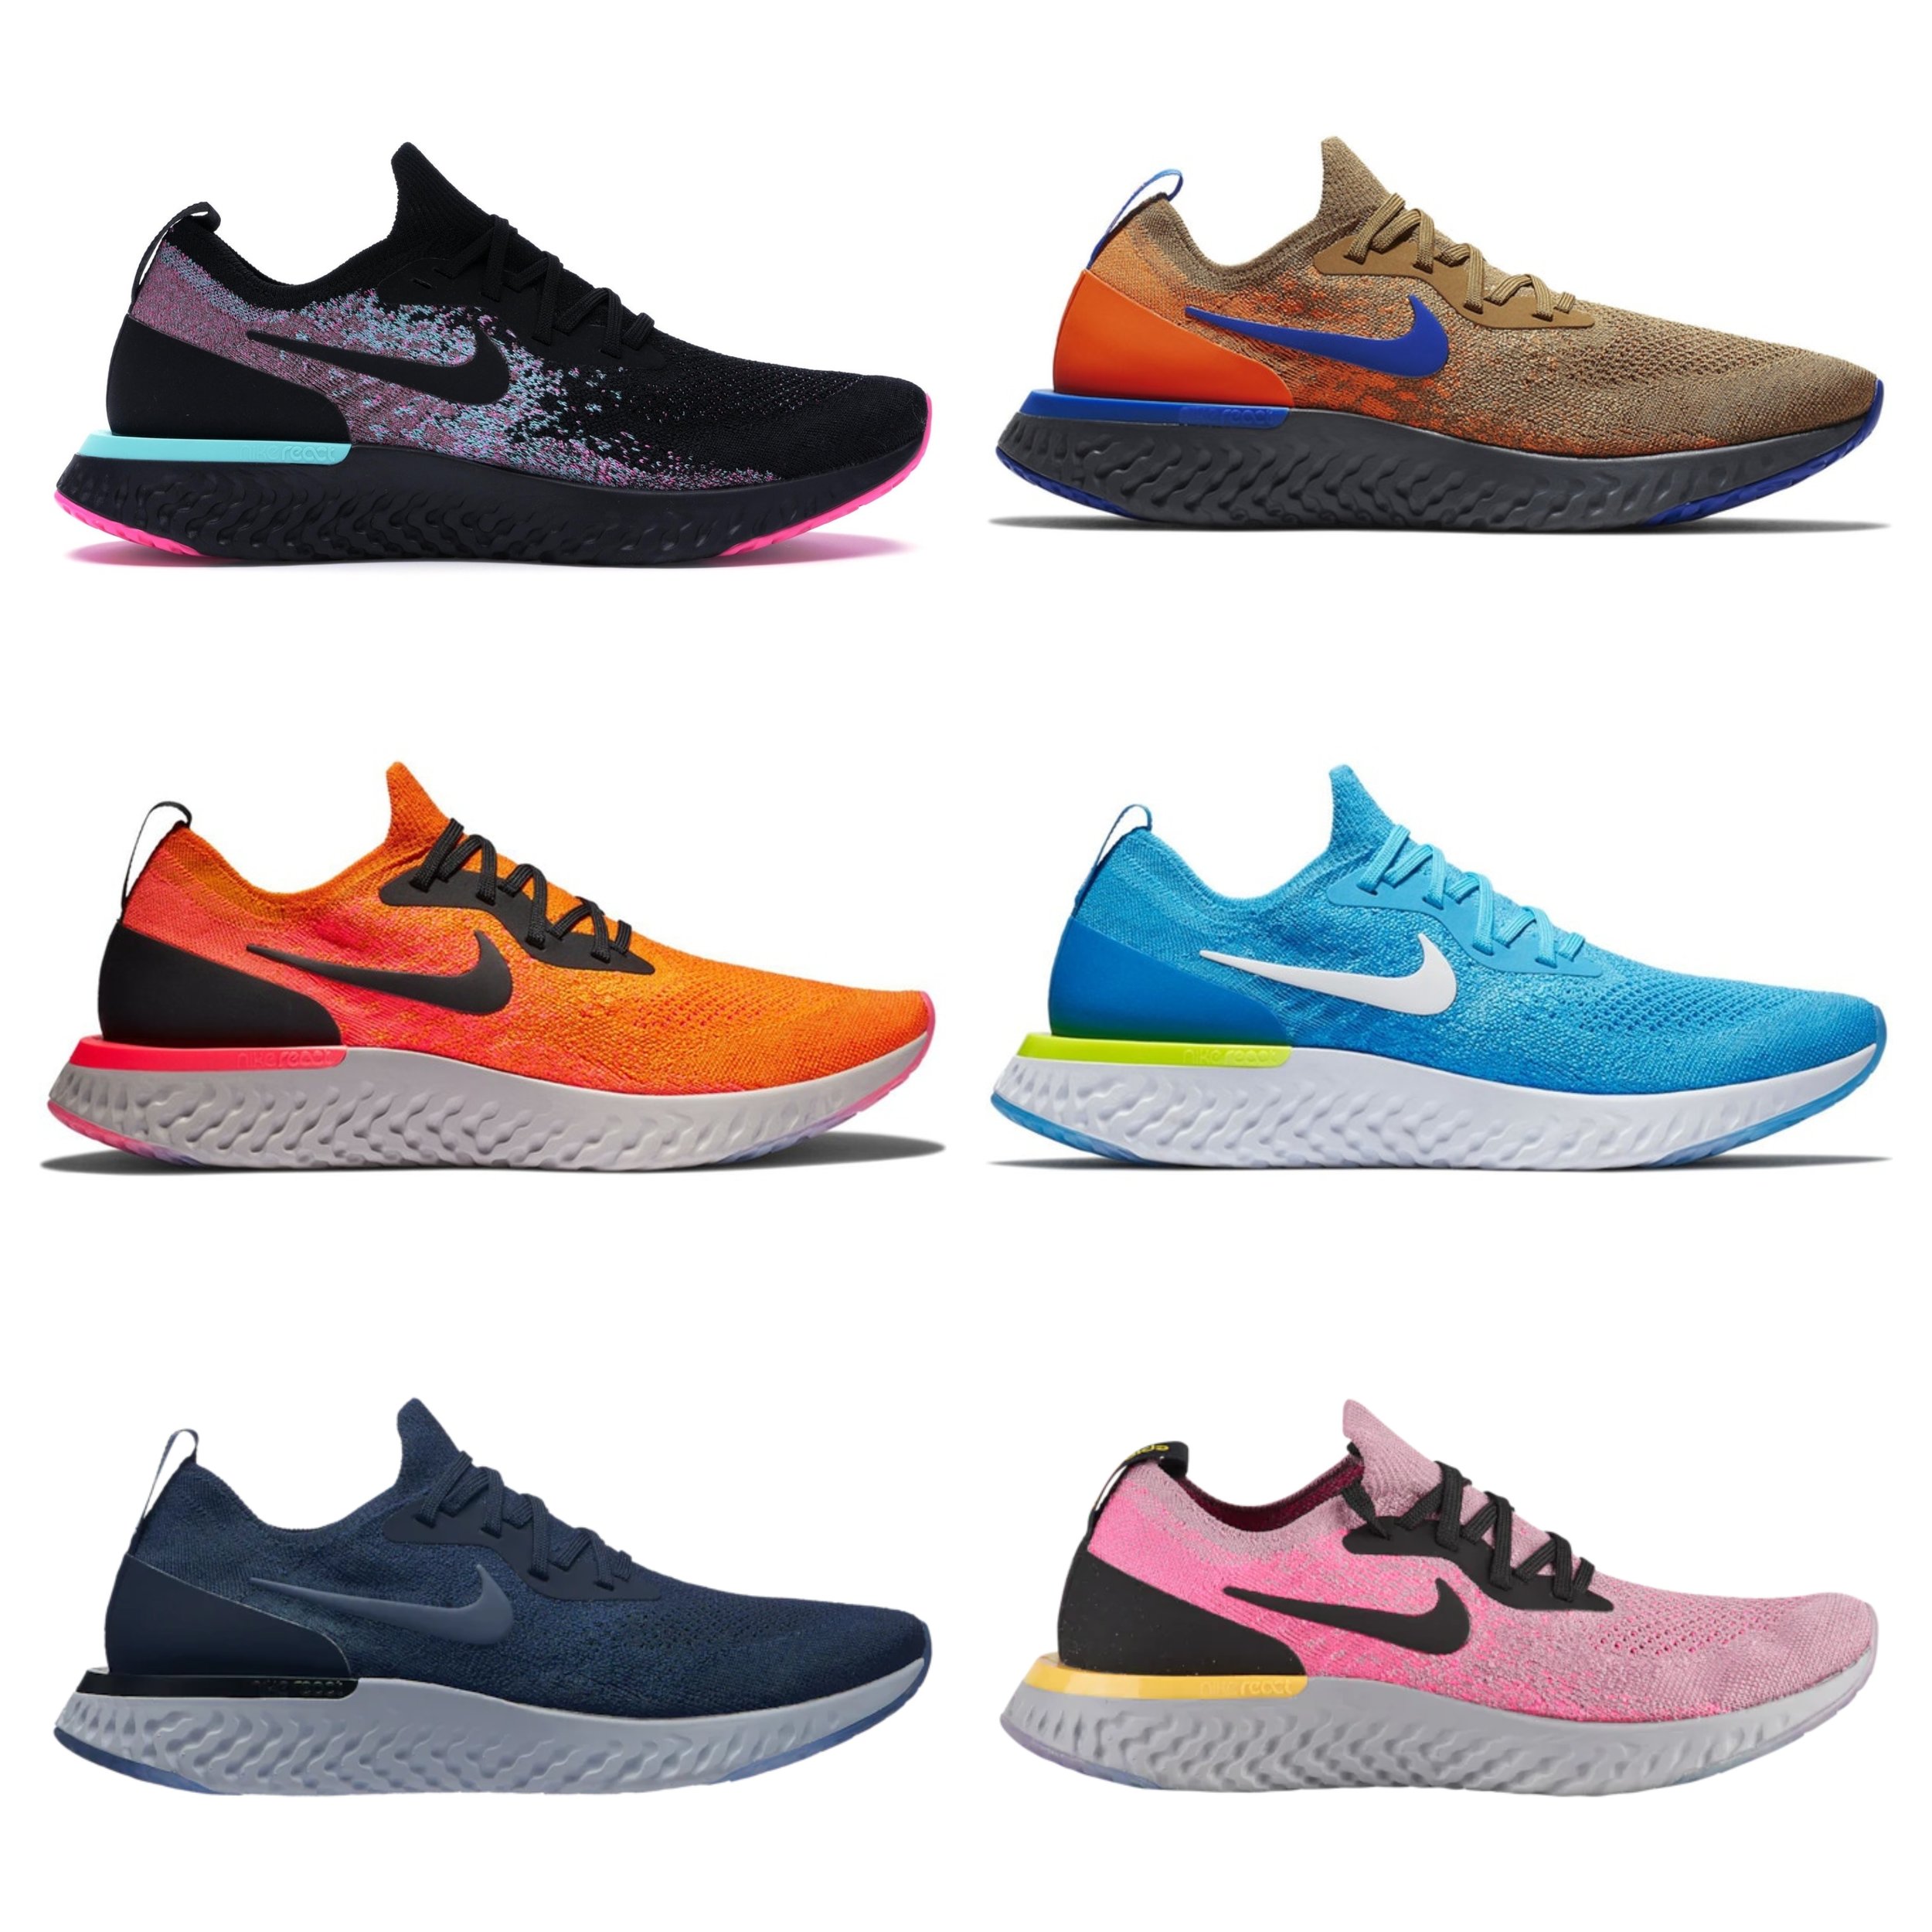 fire Suri Ciro On Sale: Nike Epic React Flyknit Colorways — Sneaker Shouts